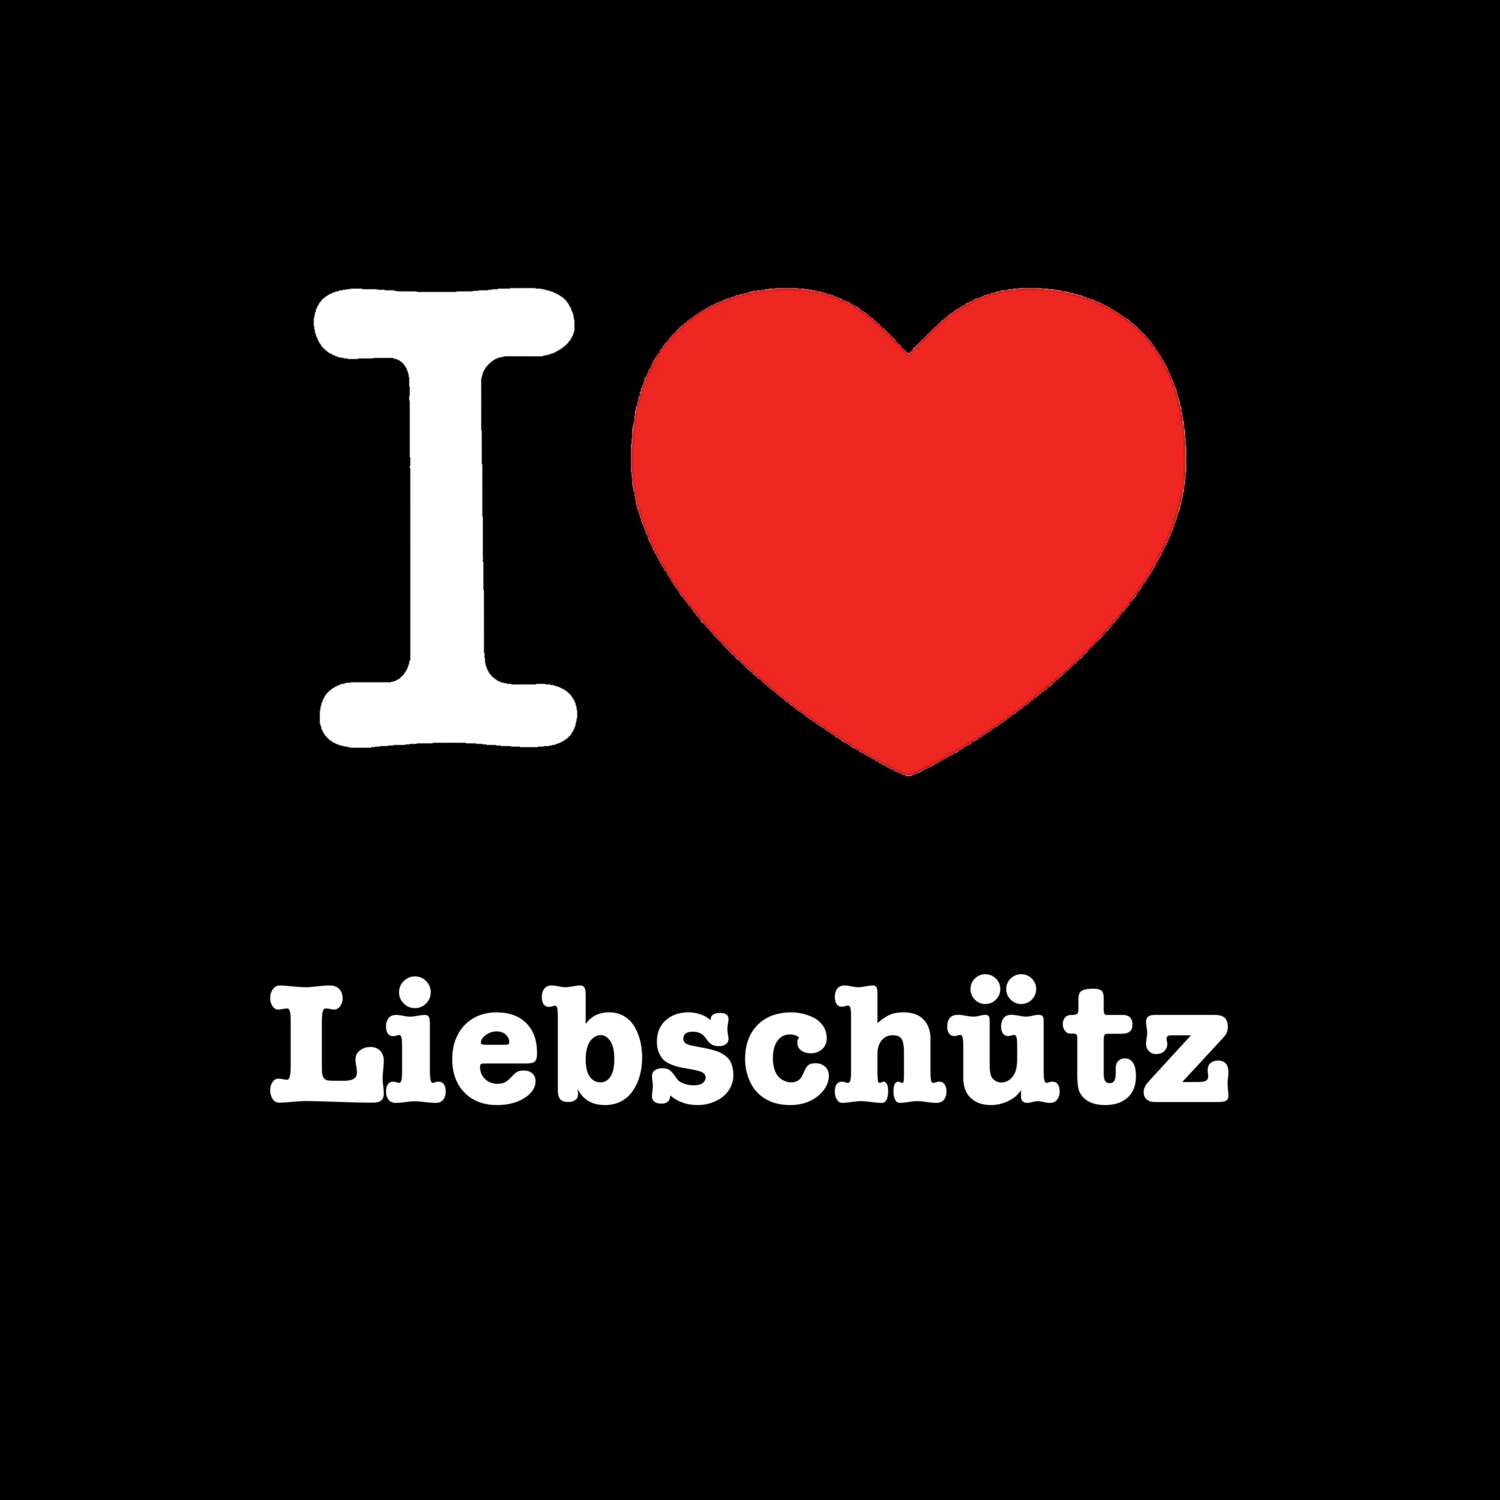 Liebschütz T-Shirt »I love«